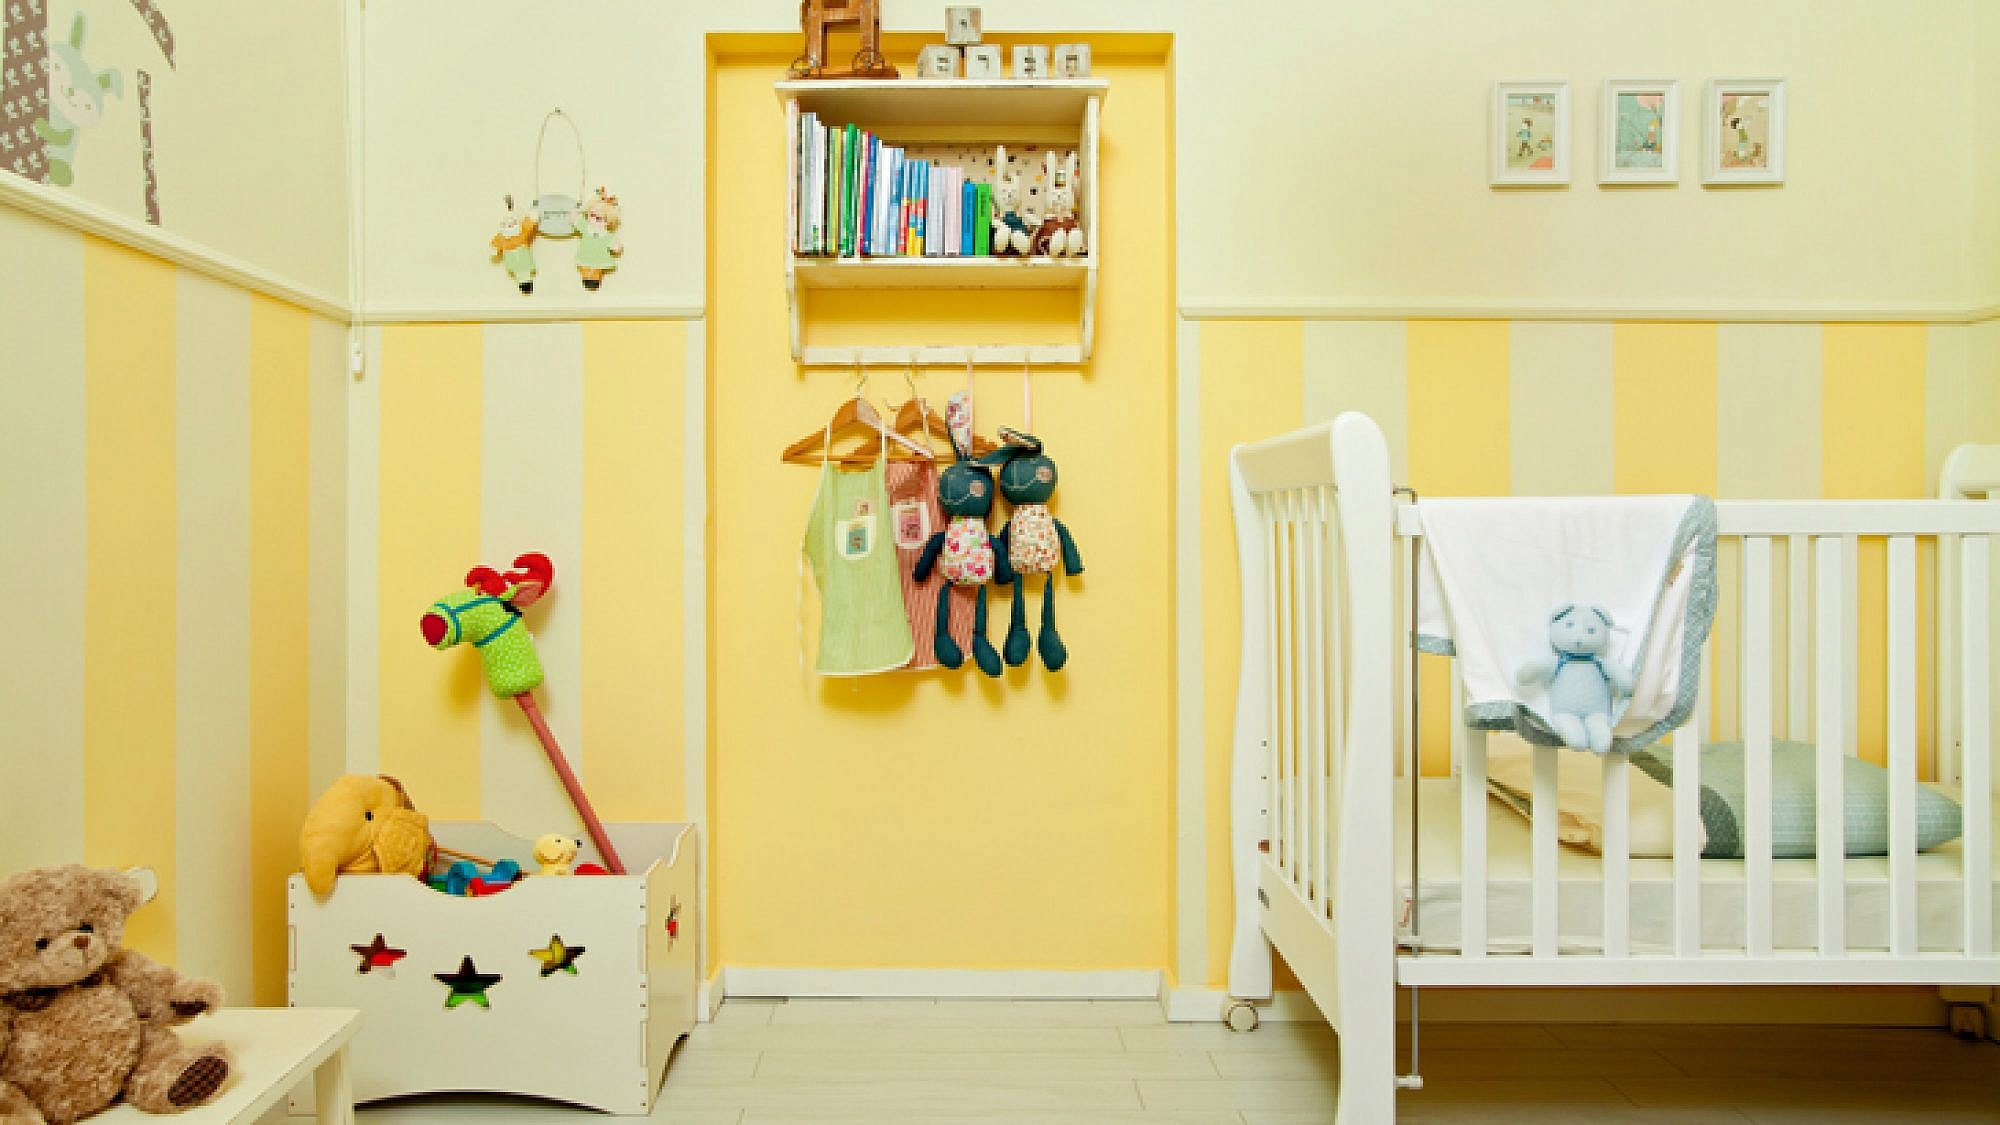 מחדר סטנדרטי לחדר תינוק מעוצב. לפני ואחרי | צלם: בועז לביא